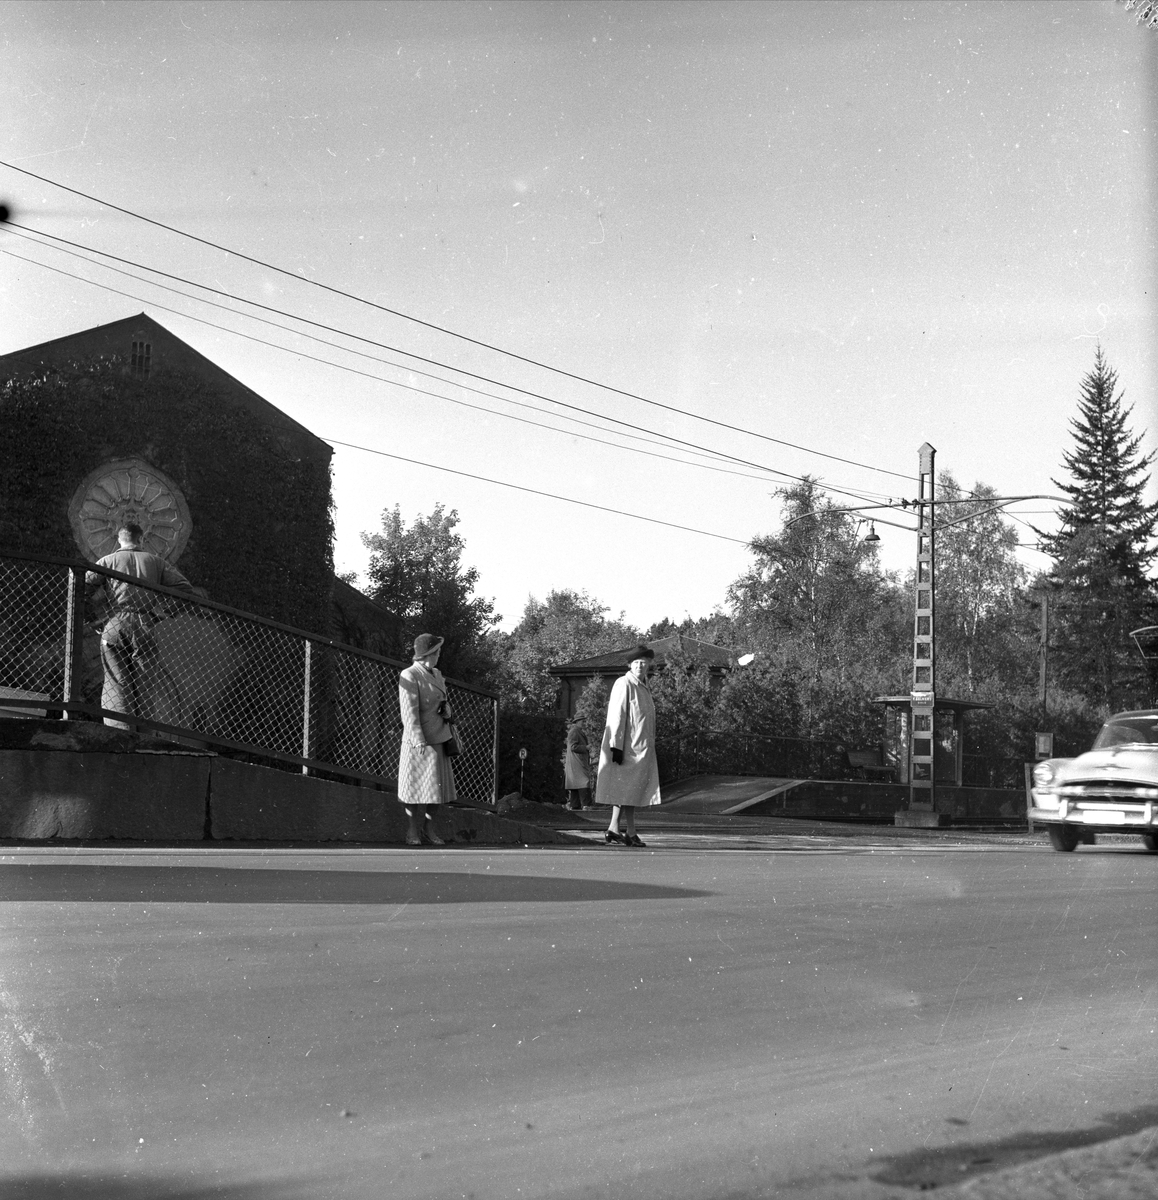 Sørkedalsveien, Oslo, 01.10.1953. Gatebilde med forstadsbane, bygning og trafikk.